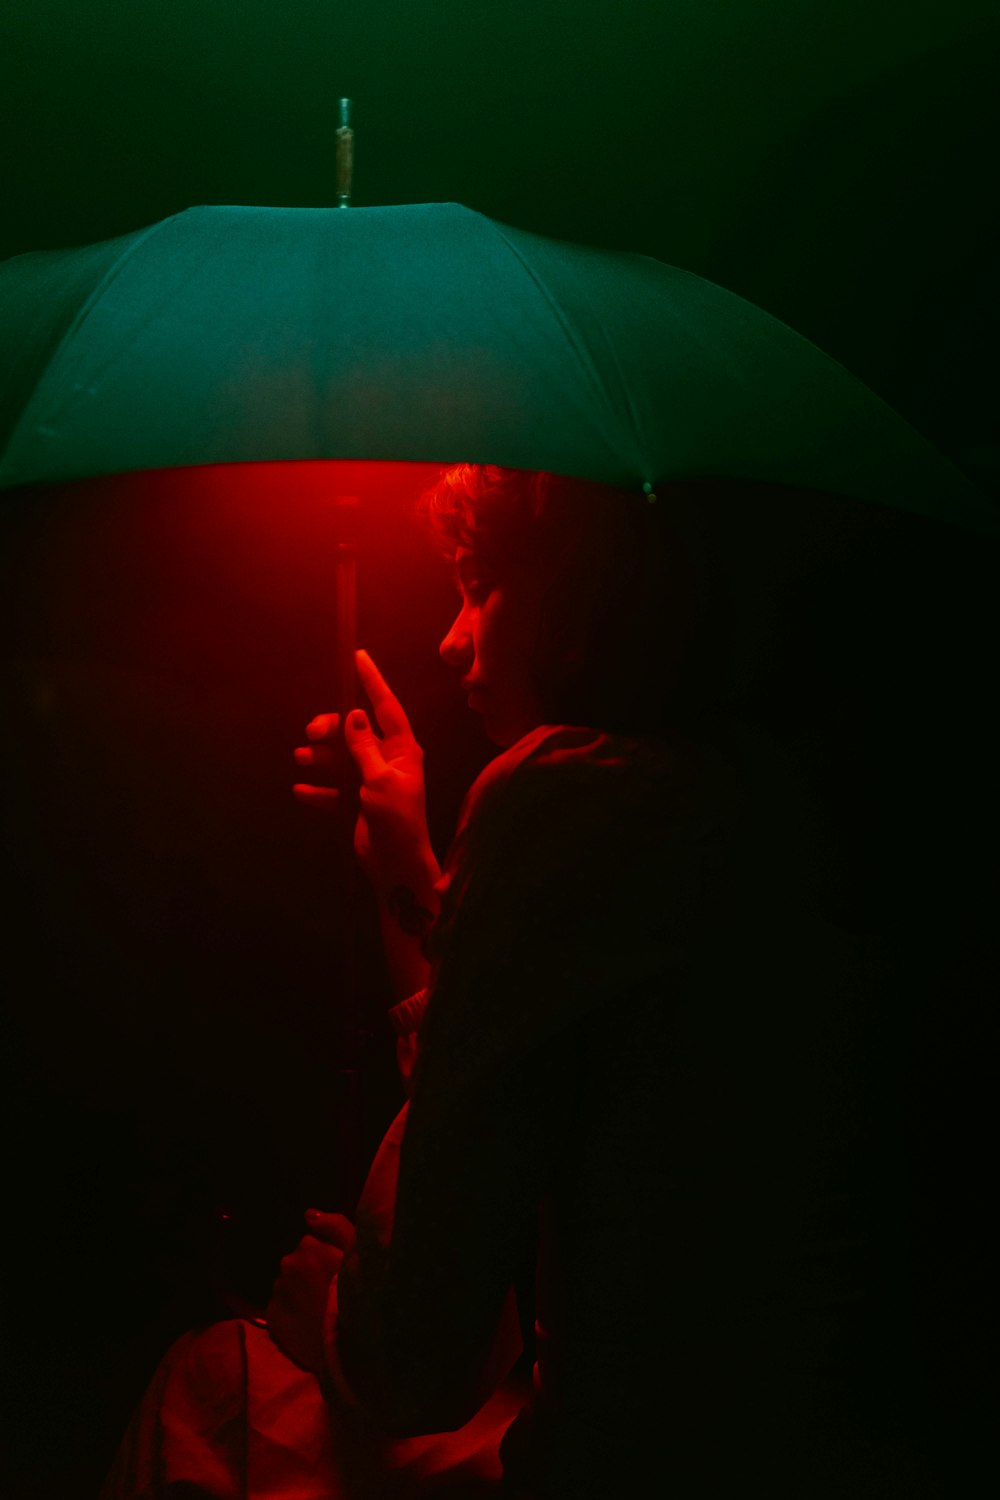 Un hombre sosteniendo un paraguas en la oscuridad